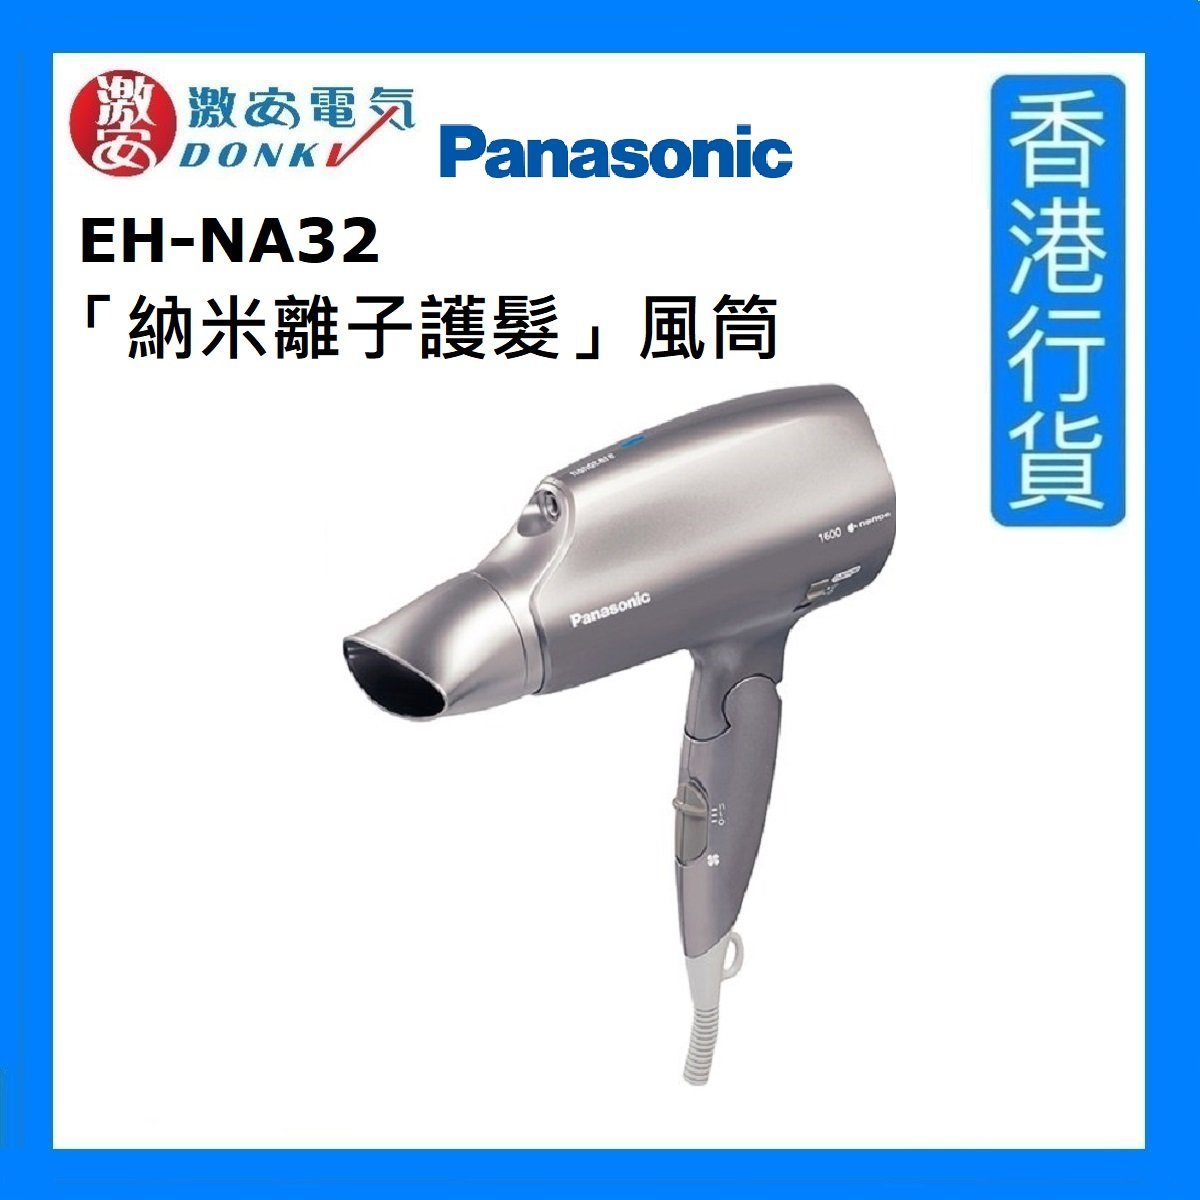 EH-NA32「納米離子護髮」風筒 - 碳灰 [香港行貨]